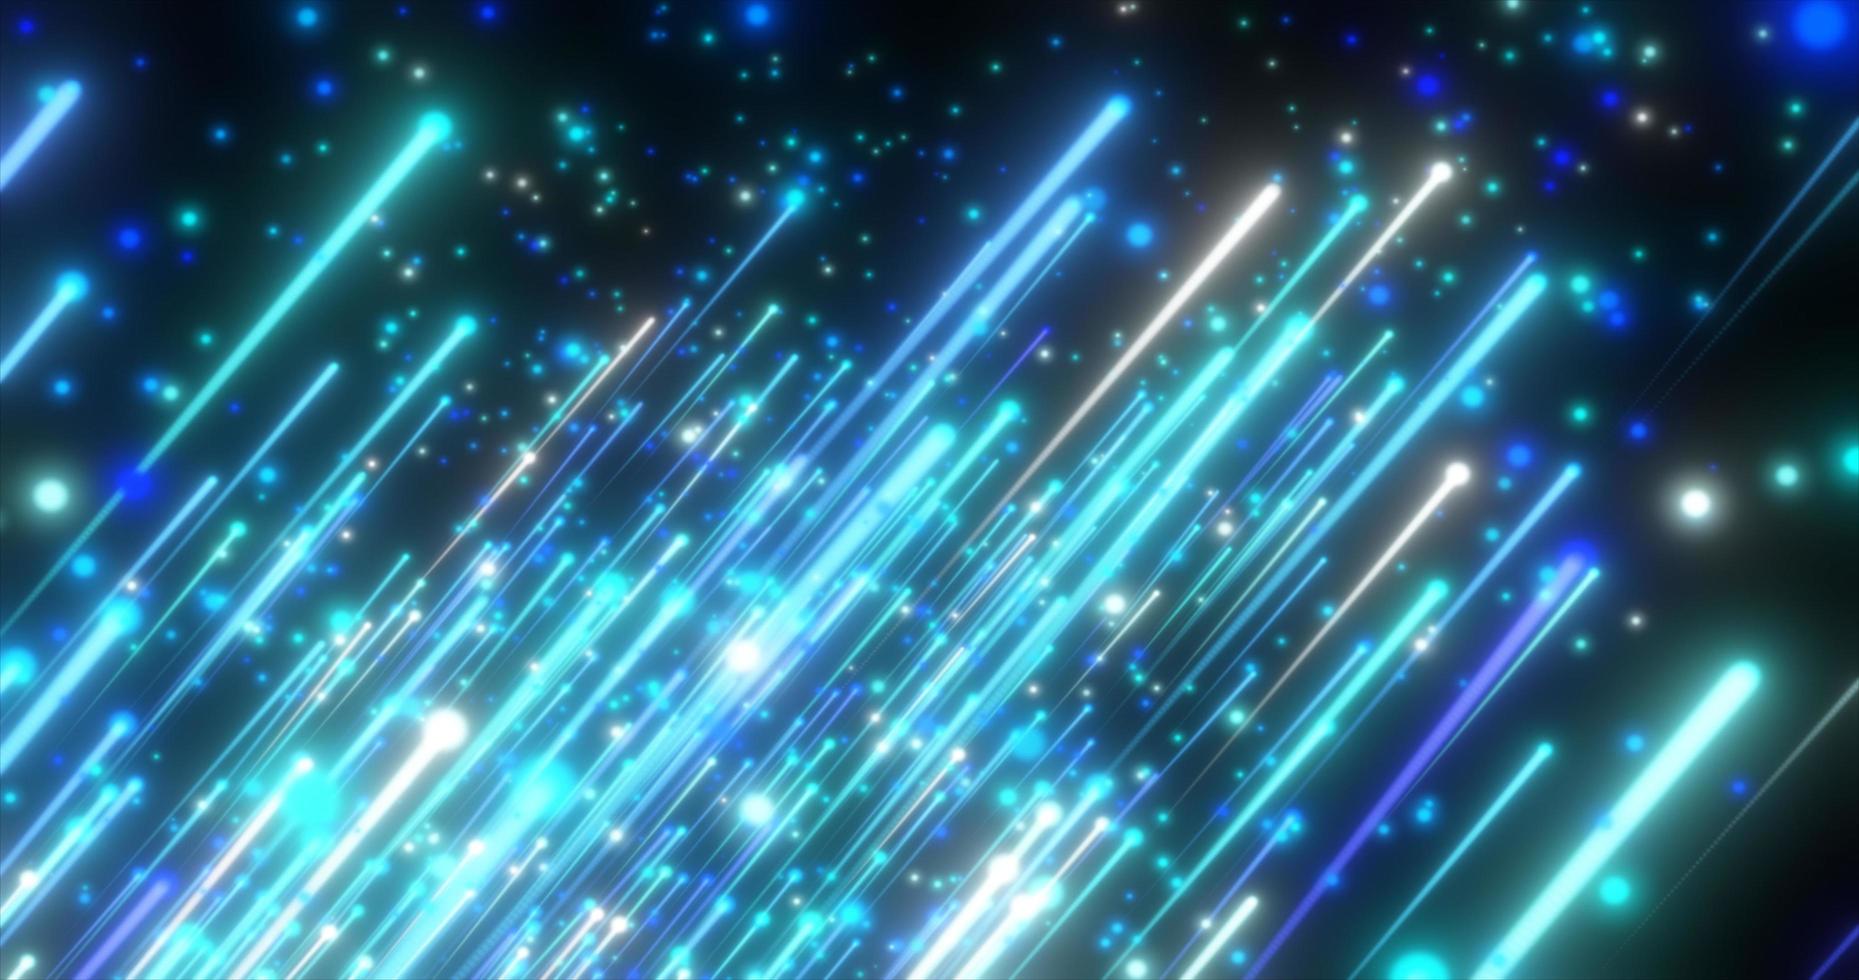 meteoritos de líneas brillantes diagonales voladoras azules abstractas de energía y luz de partículas y puntos de energía mágica sobre un fondo negro. fondo abstracto foto